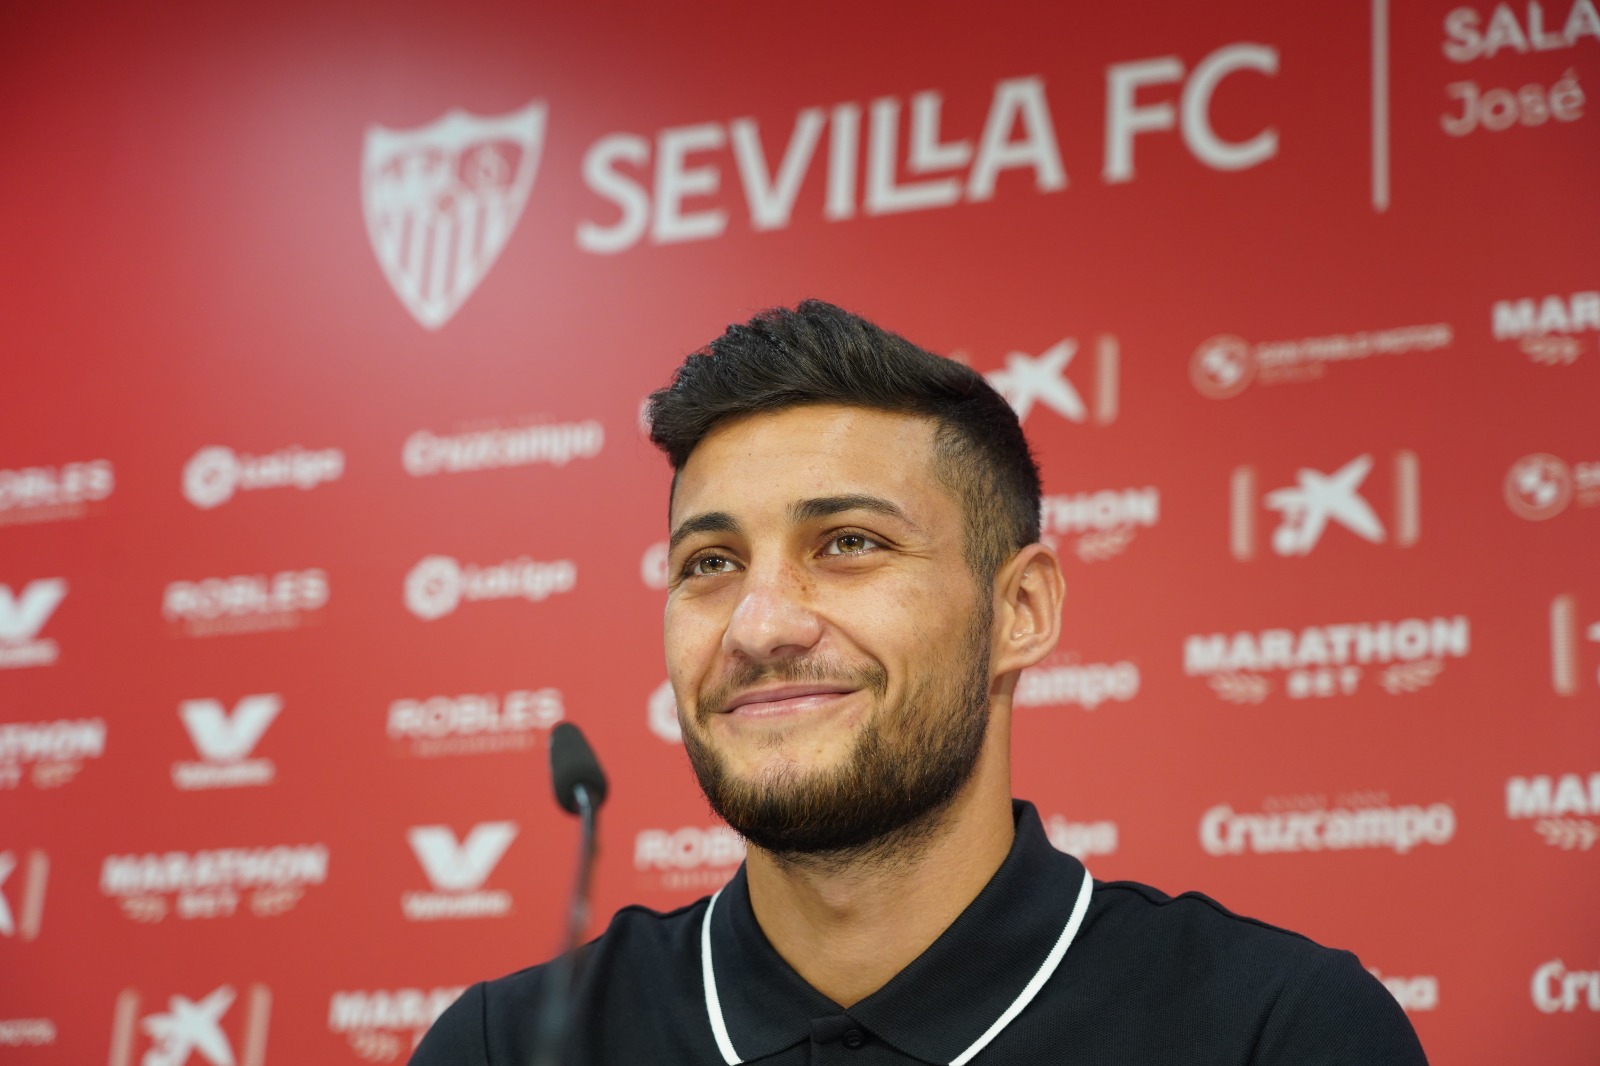 Óscar Rodríguez, Sevilla FC